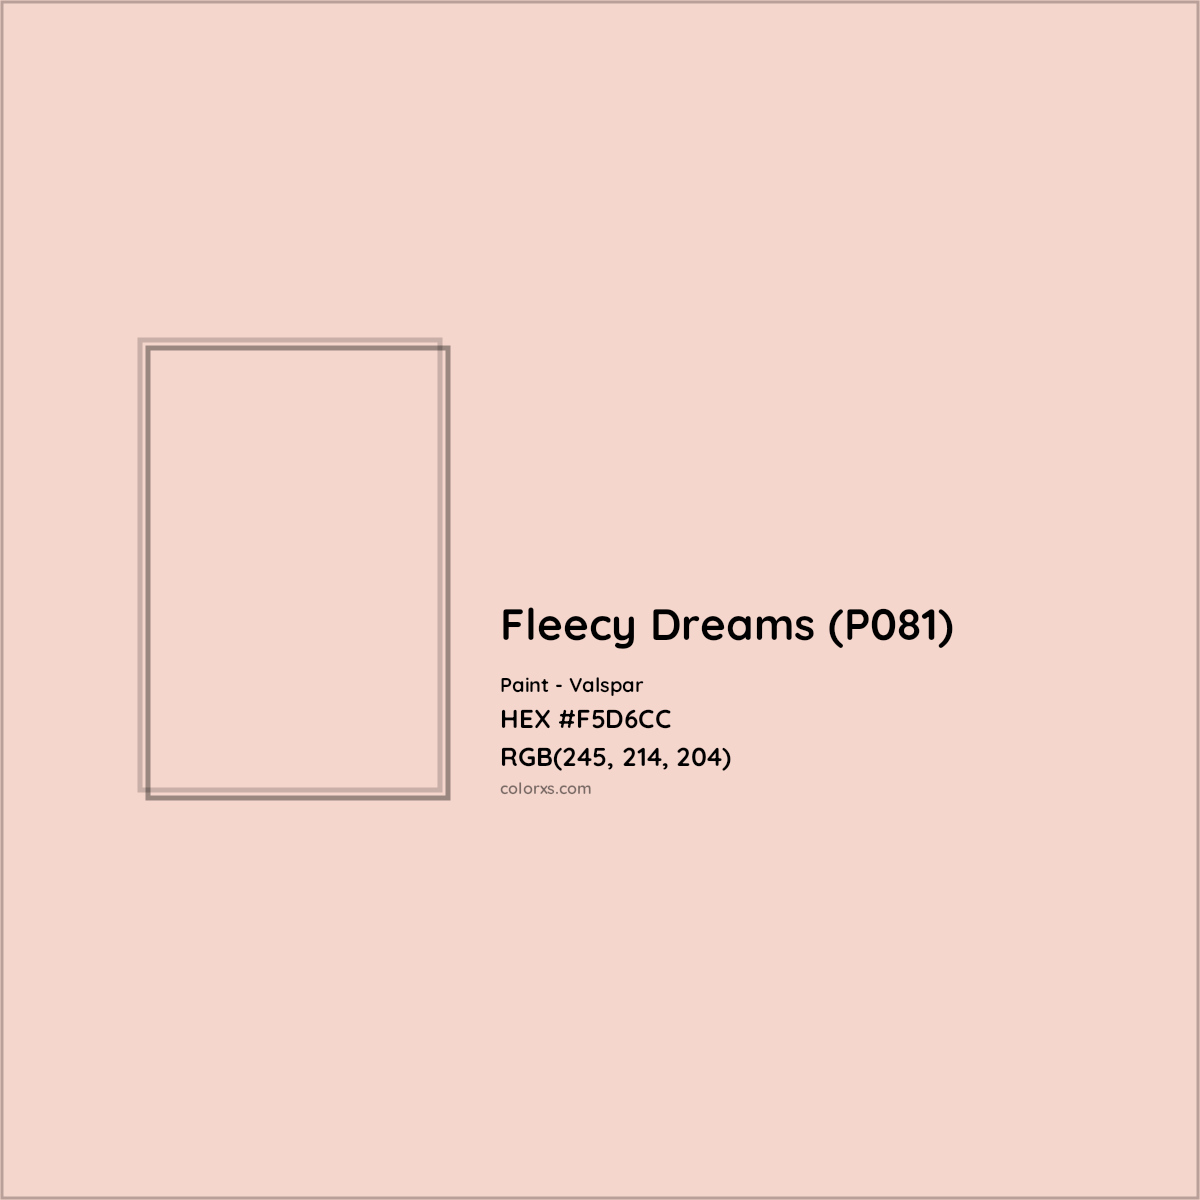 HEX #F5D6CC Fleecy Dreams (P081) Paint Valspar - Color Code